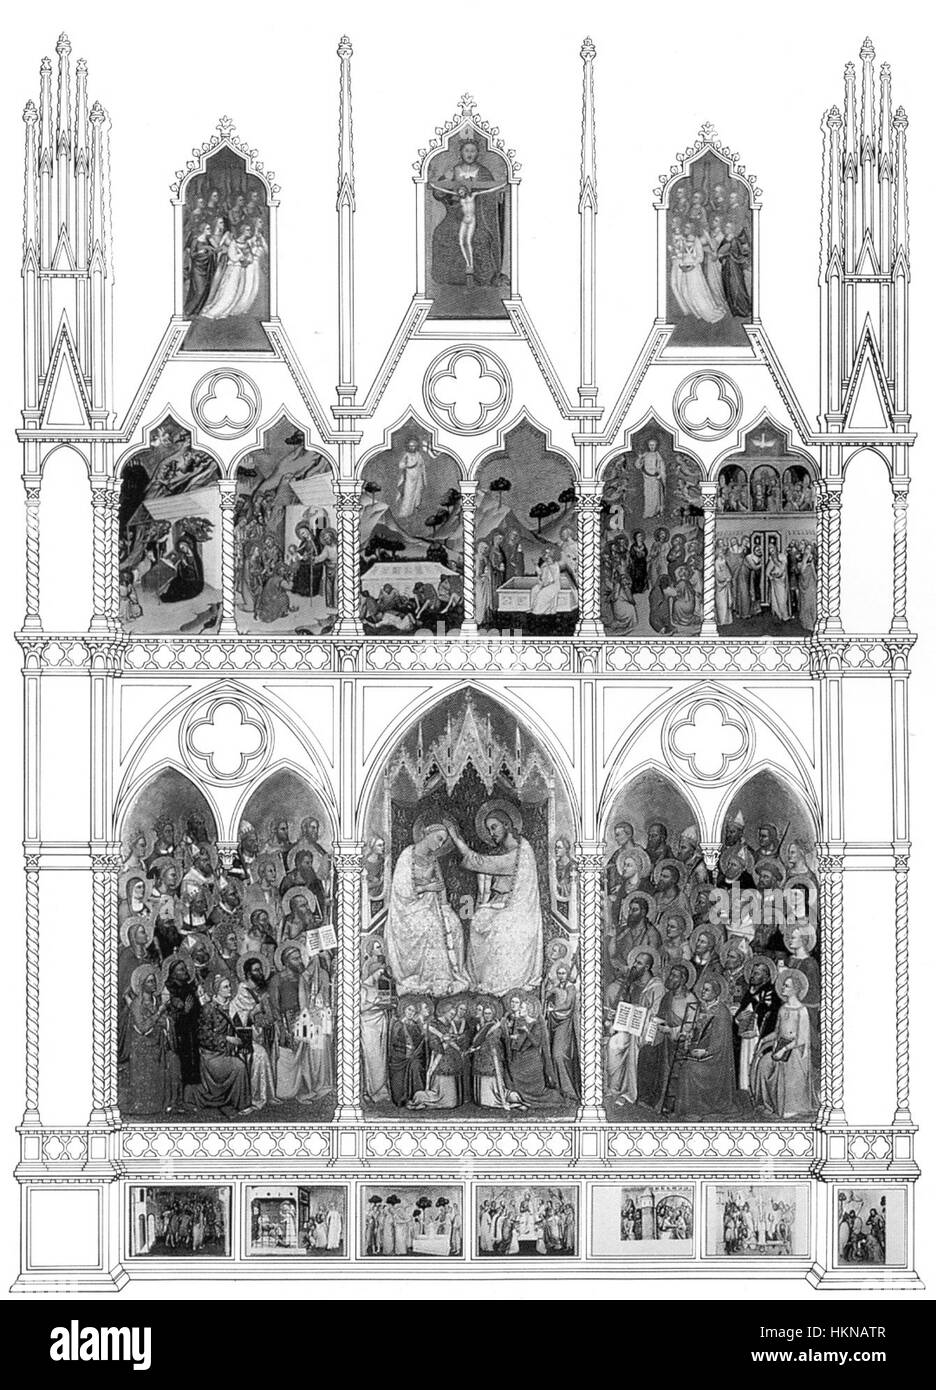 31 Jacopo di Cione. Polyptych San Pier Maggiore, 1370-71 London NG. Reconstruction. Stock Photo